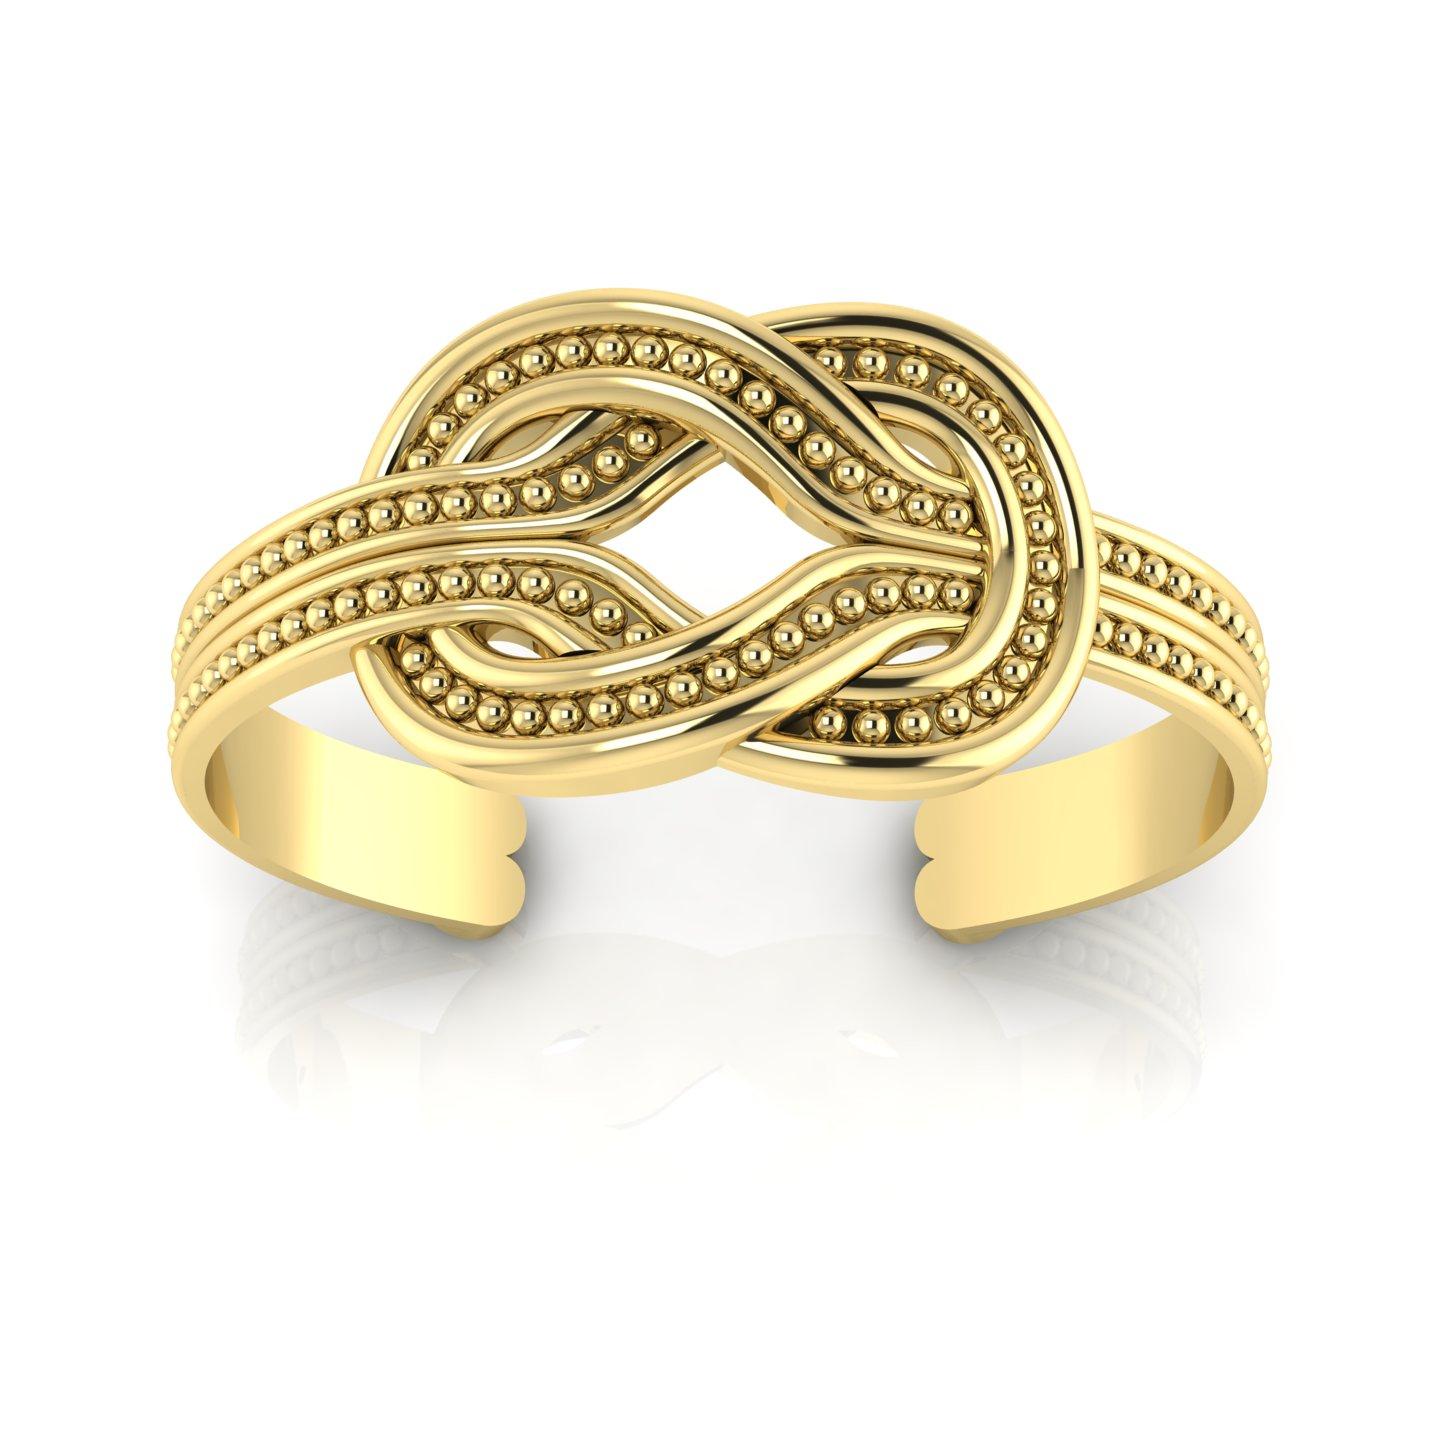 22 Karat Gold Herkules Manschettenarmband mit Knoten für Damen oder Herren im Angebot